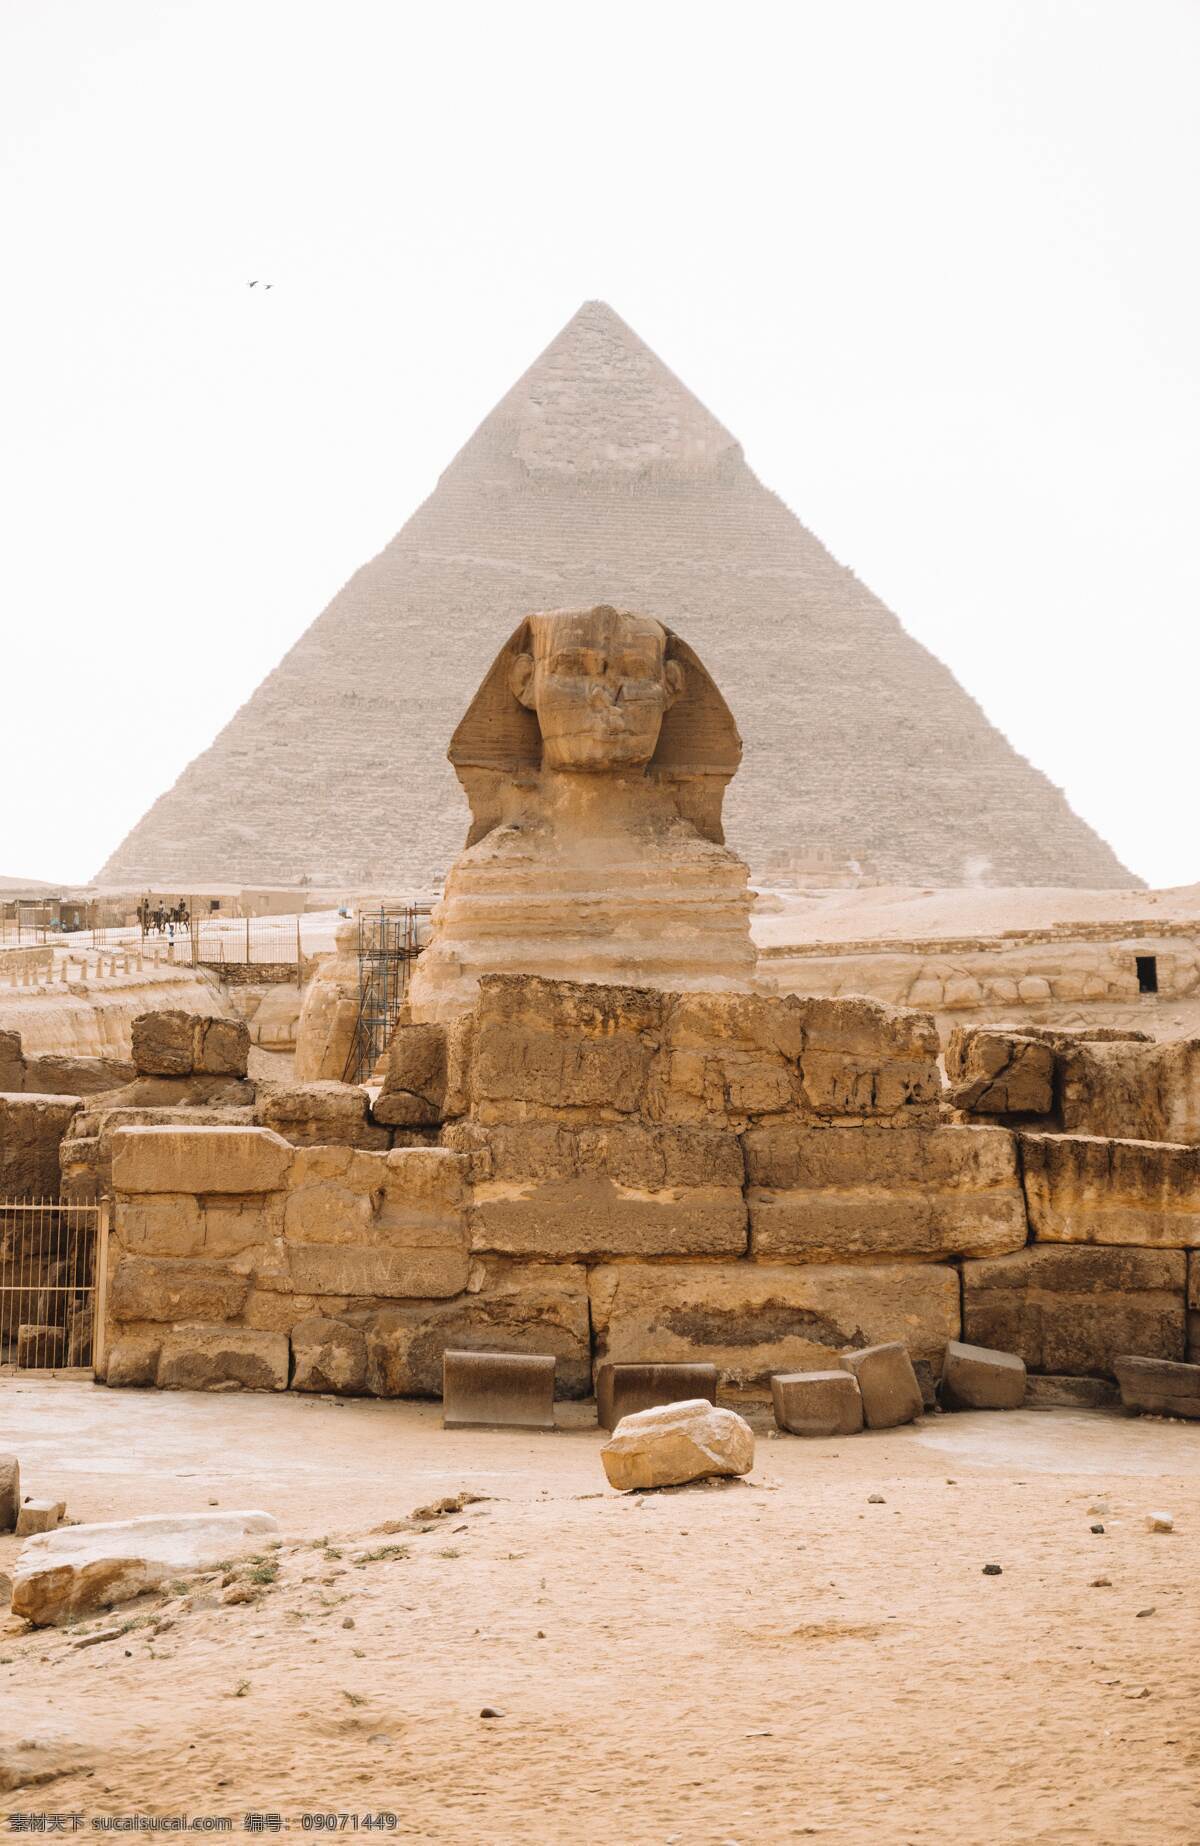 埃及金字塔 古埃及金字塔 埃及 古埃及 胡夫金字塔 狮身人面 狮身人面像 未分类杂图 旅游摄影 国外旅游